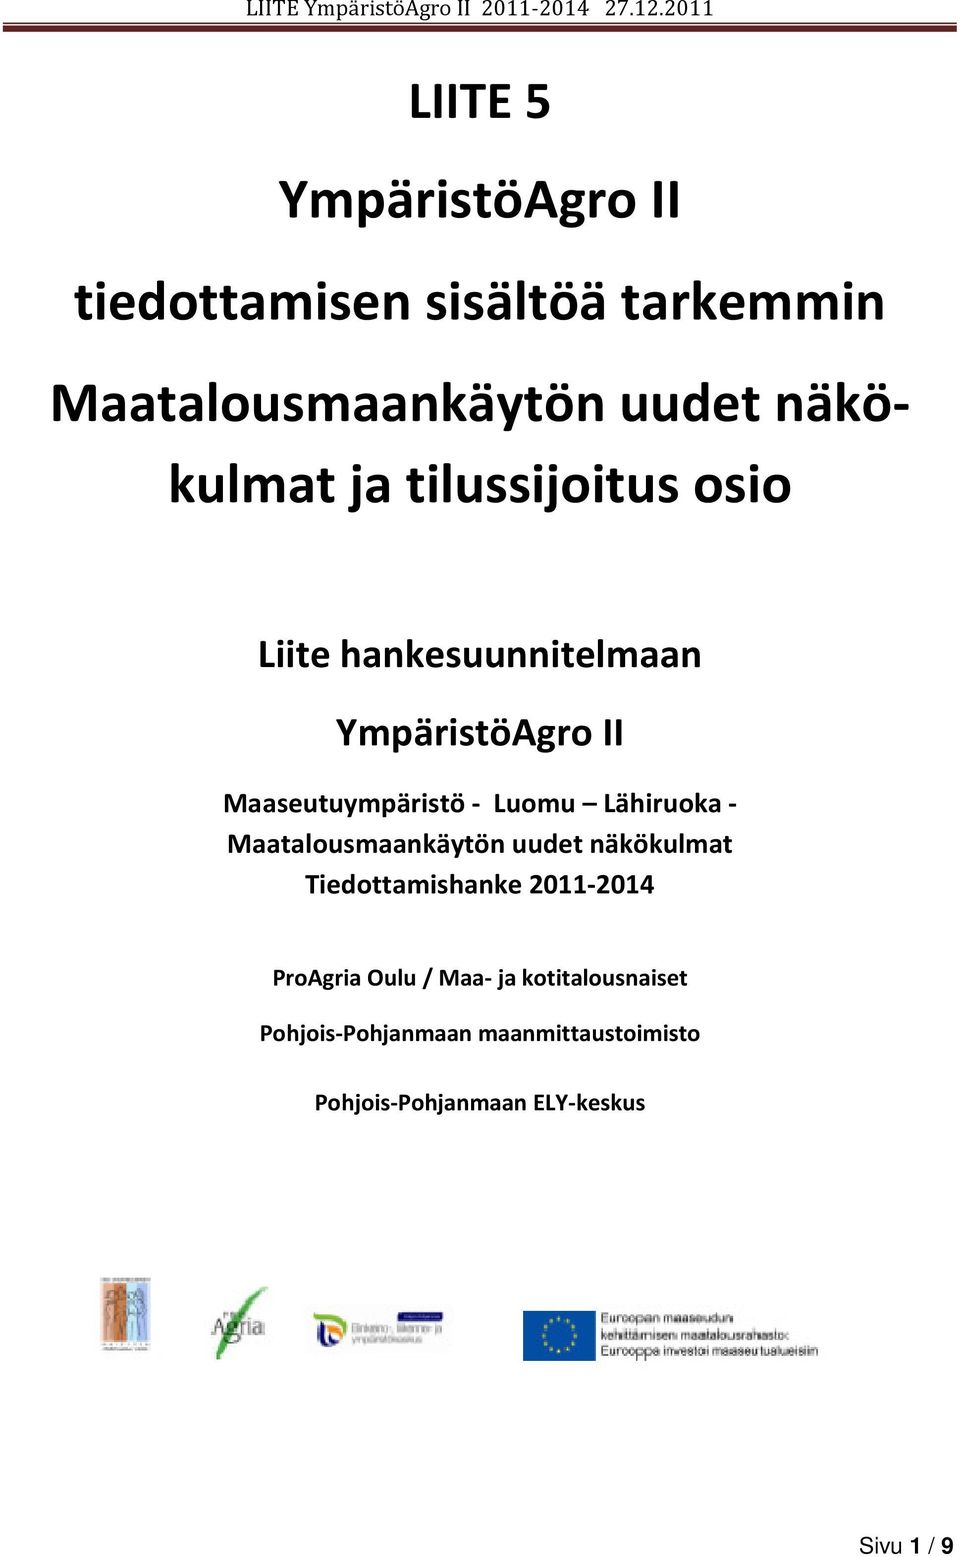 Lähiruoka - Maatalousmaankäytön uudet näkökulmat Tiedottamishanke 2011-2014 ProAgria Oulu /